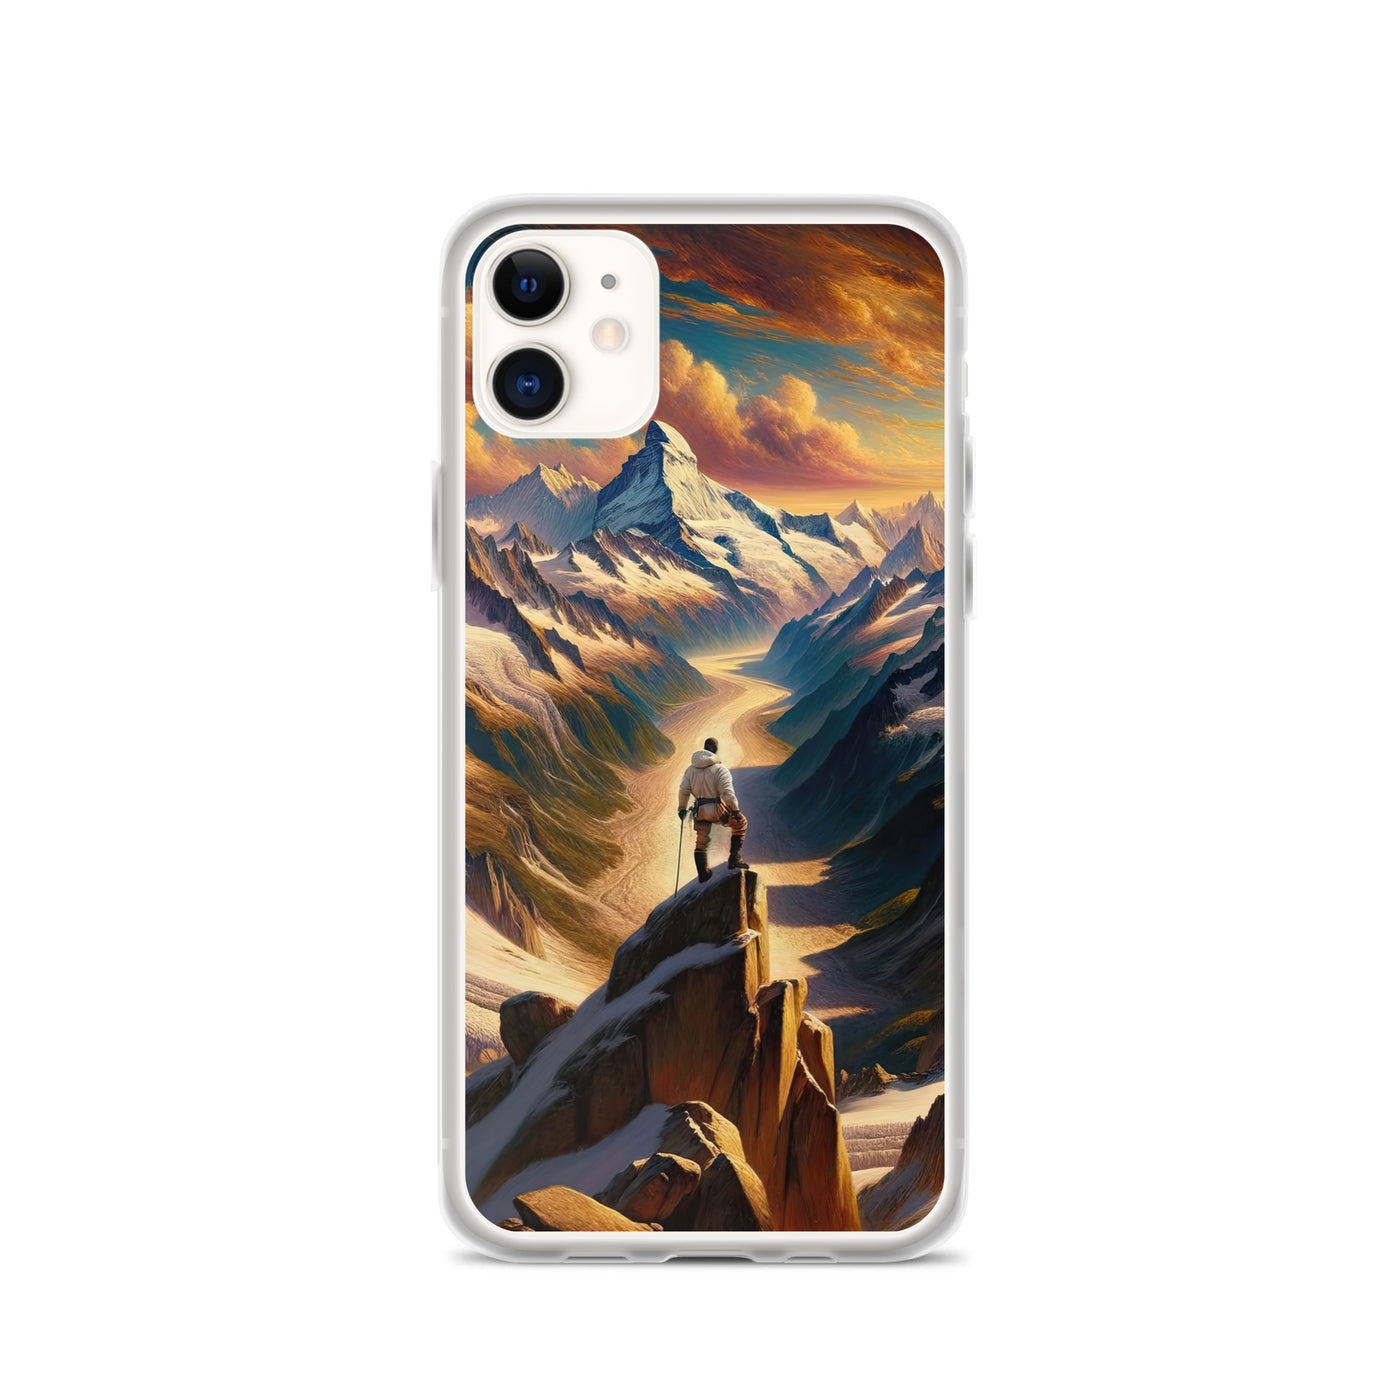 Ölgemälde eines Wanderers auf einem Hügel mit Panoramablick auf schneebedeckte Alpen und goldenen Himmel - iPhone Schutzhülle (durchsichtig) wandern xxx yyy zzz iPhone 11